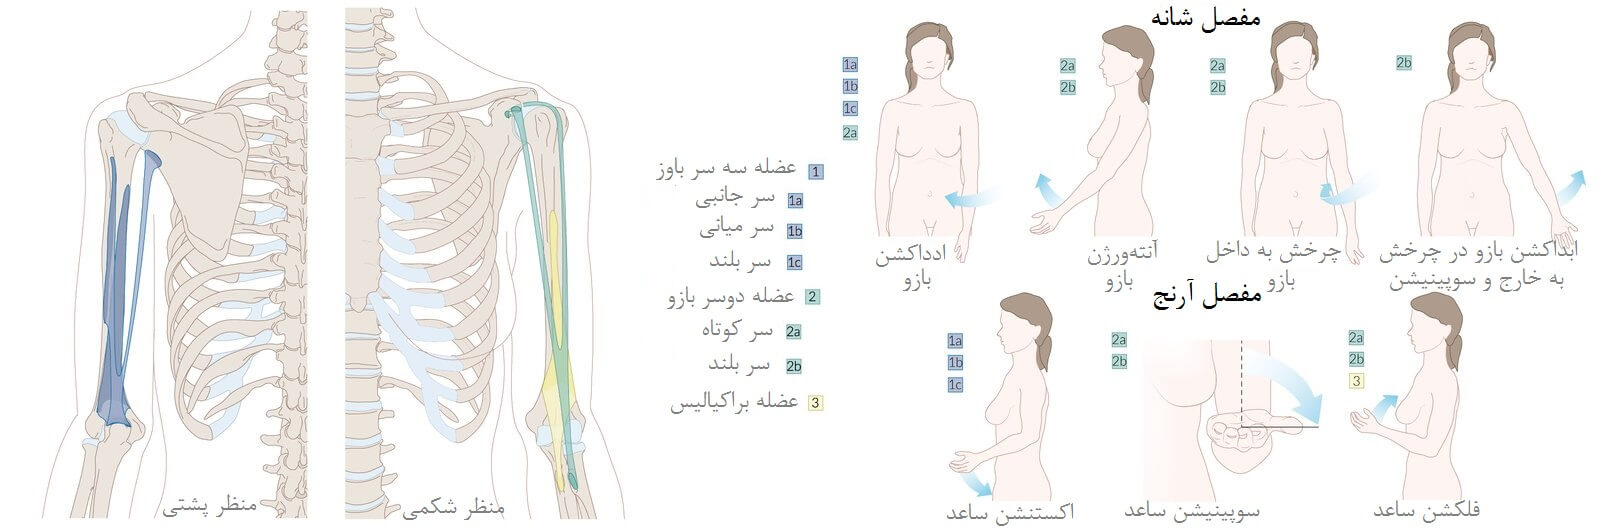 سیستم اسکلتی-عضلانی بازو